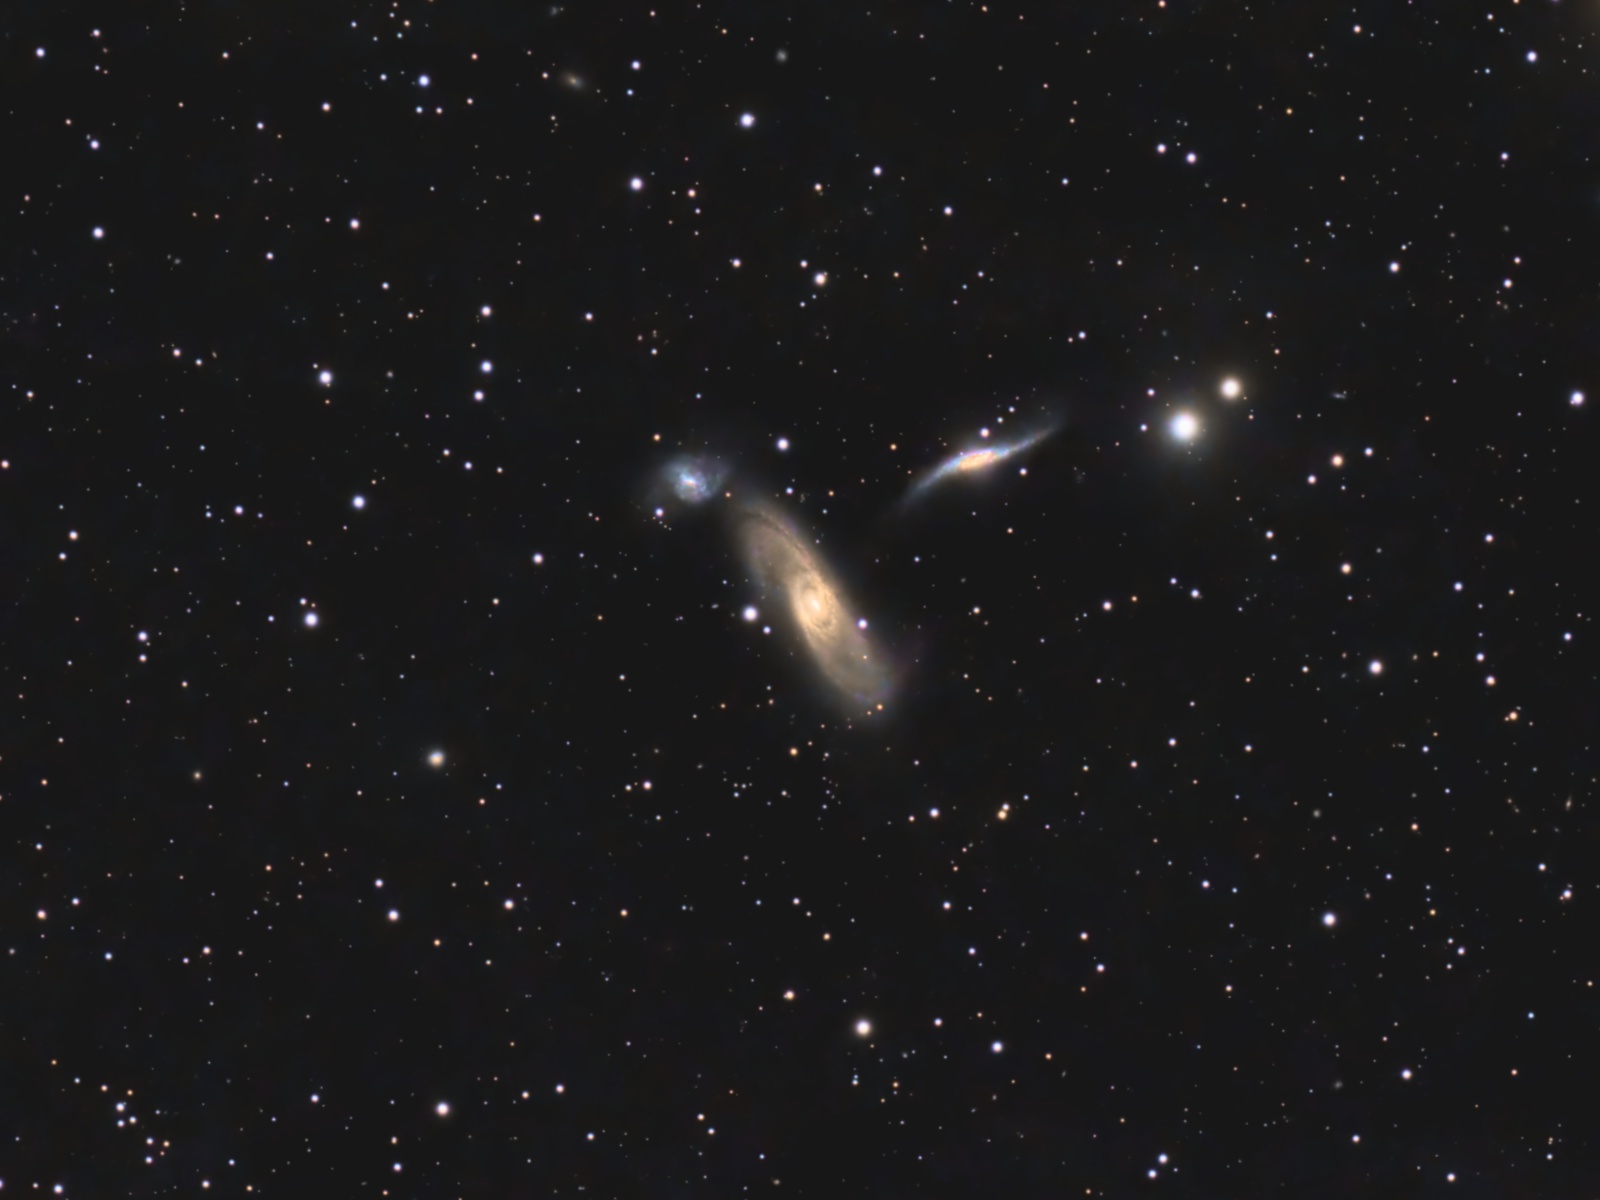 Arp 286 Galaxy Group